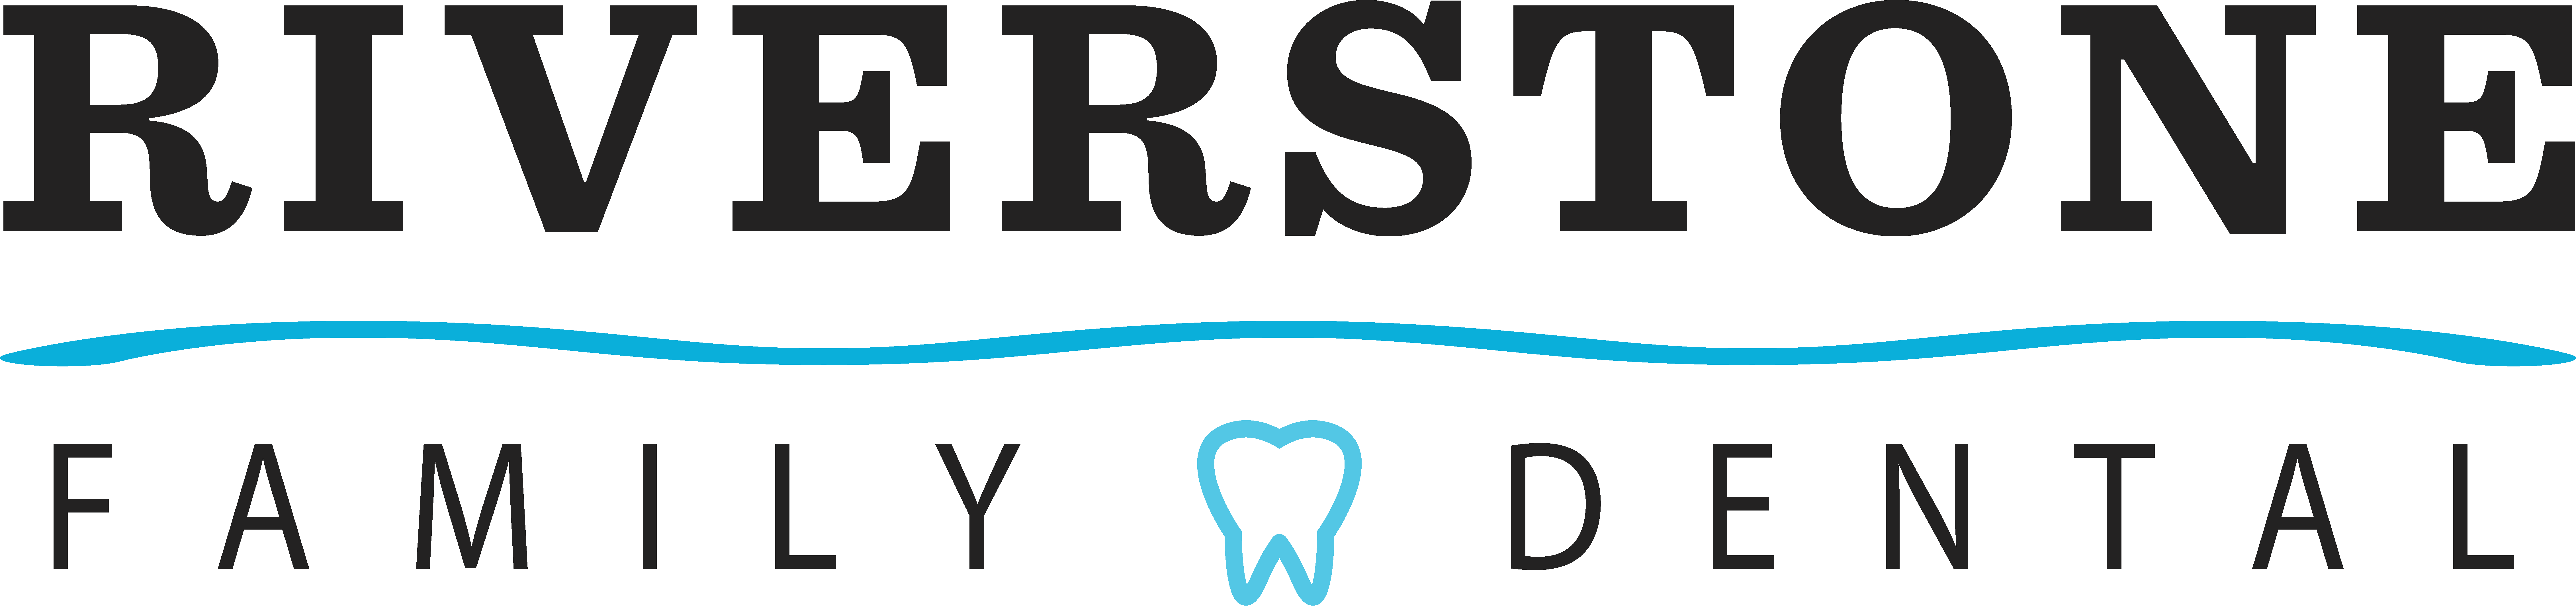 Company logo of Riverstone Family Dental